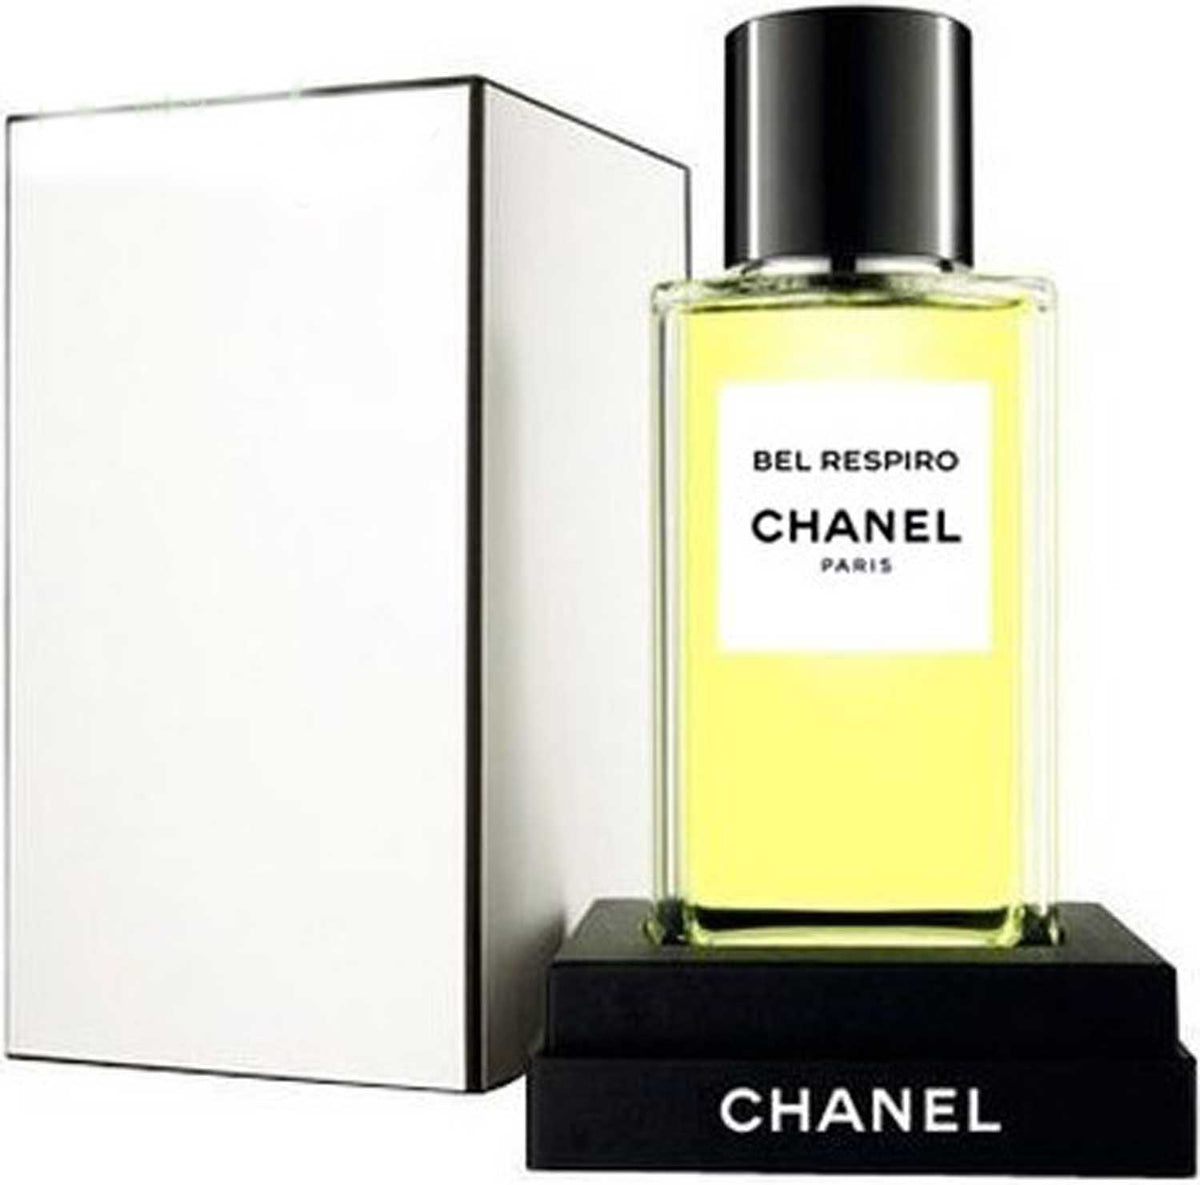 Chanel Beige and Jersey Extrait de Parfum : Perfume Reviews - Bois de Jasmin